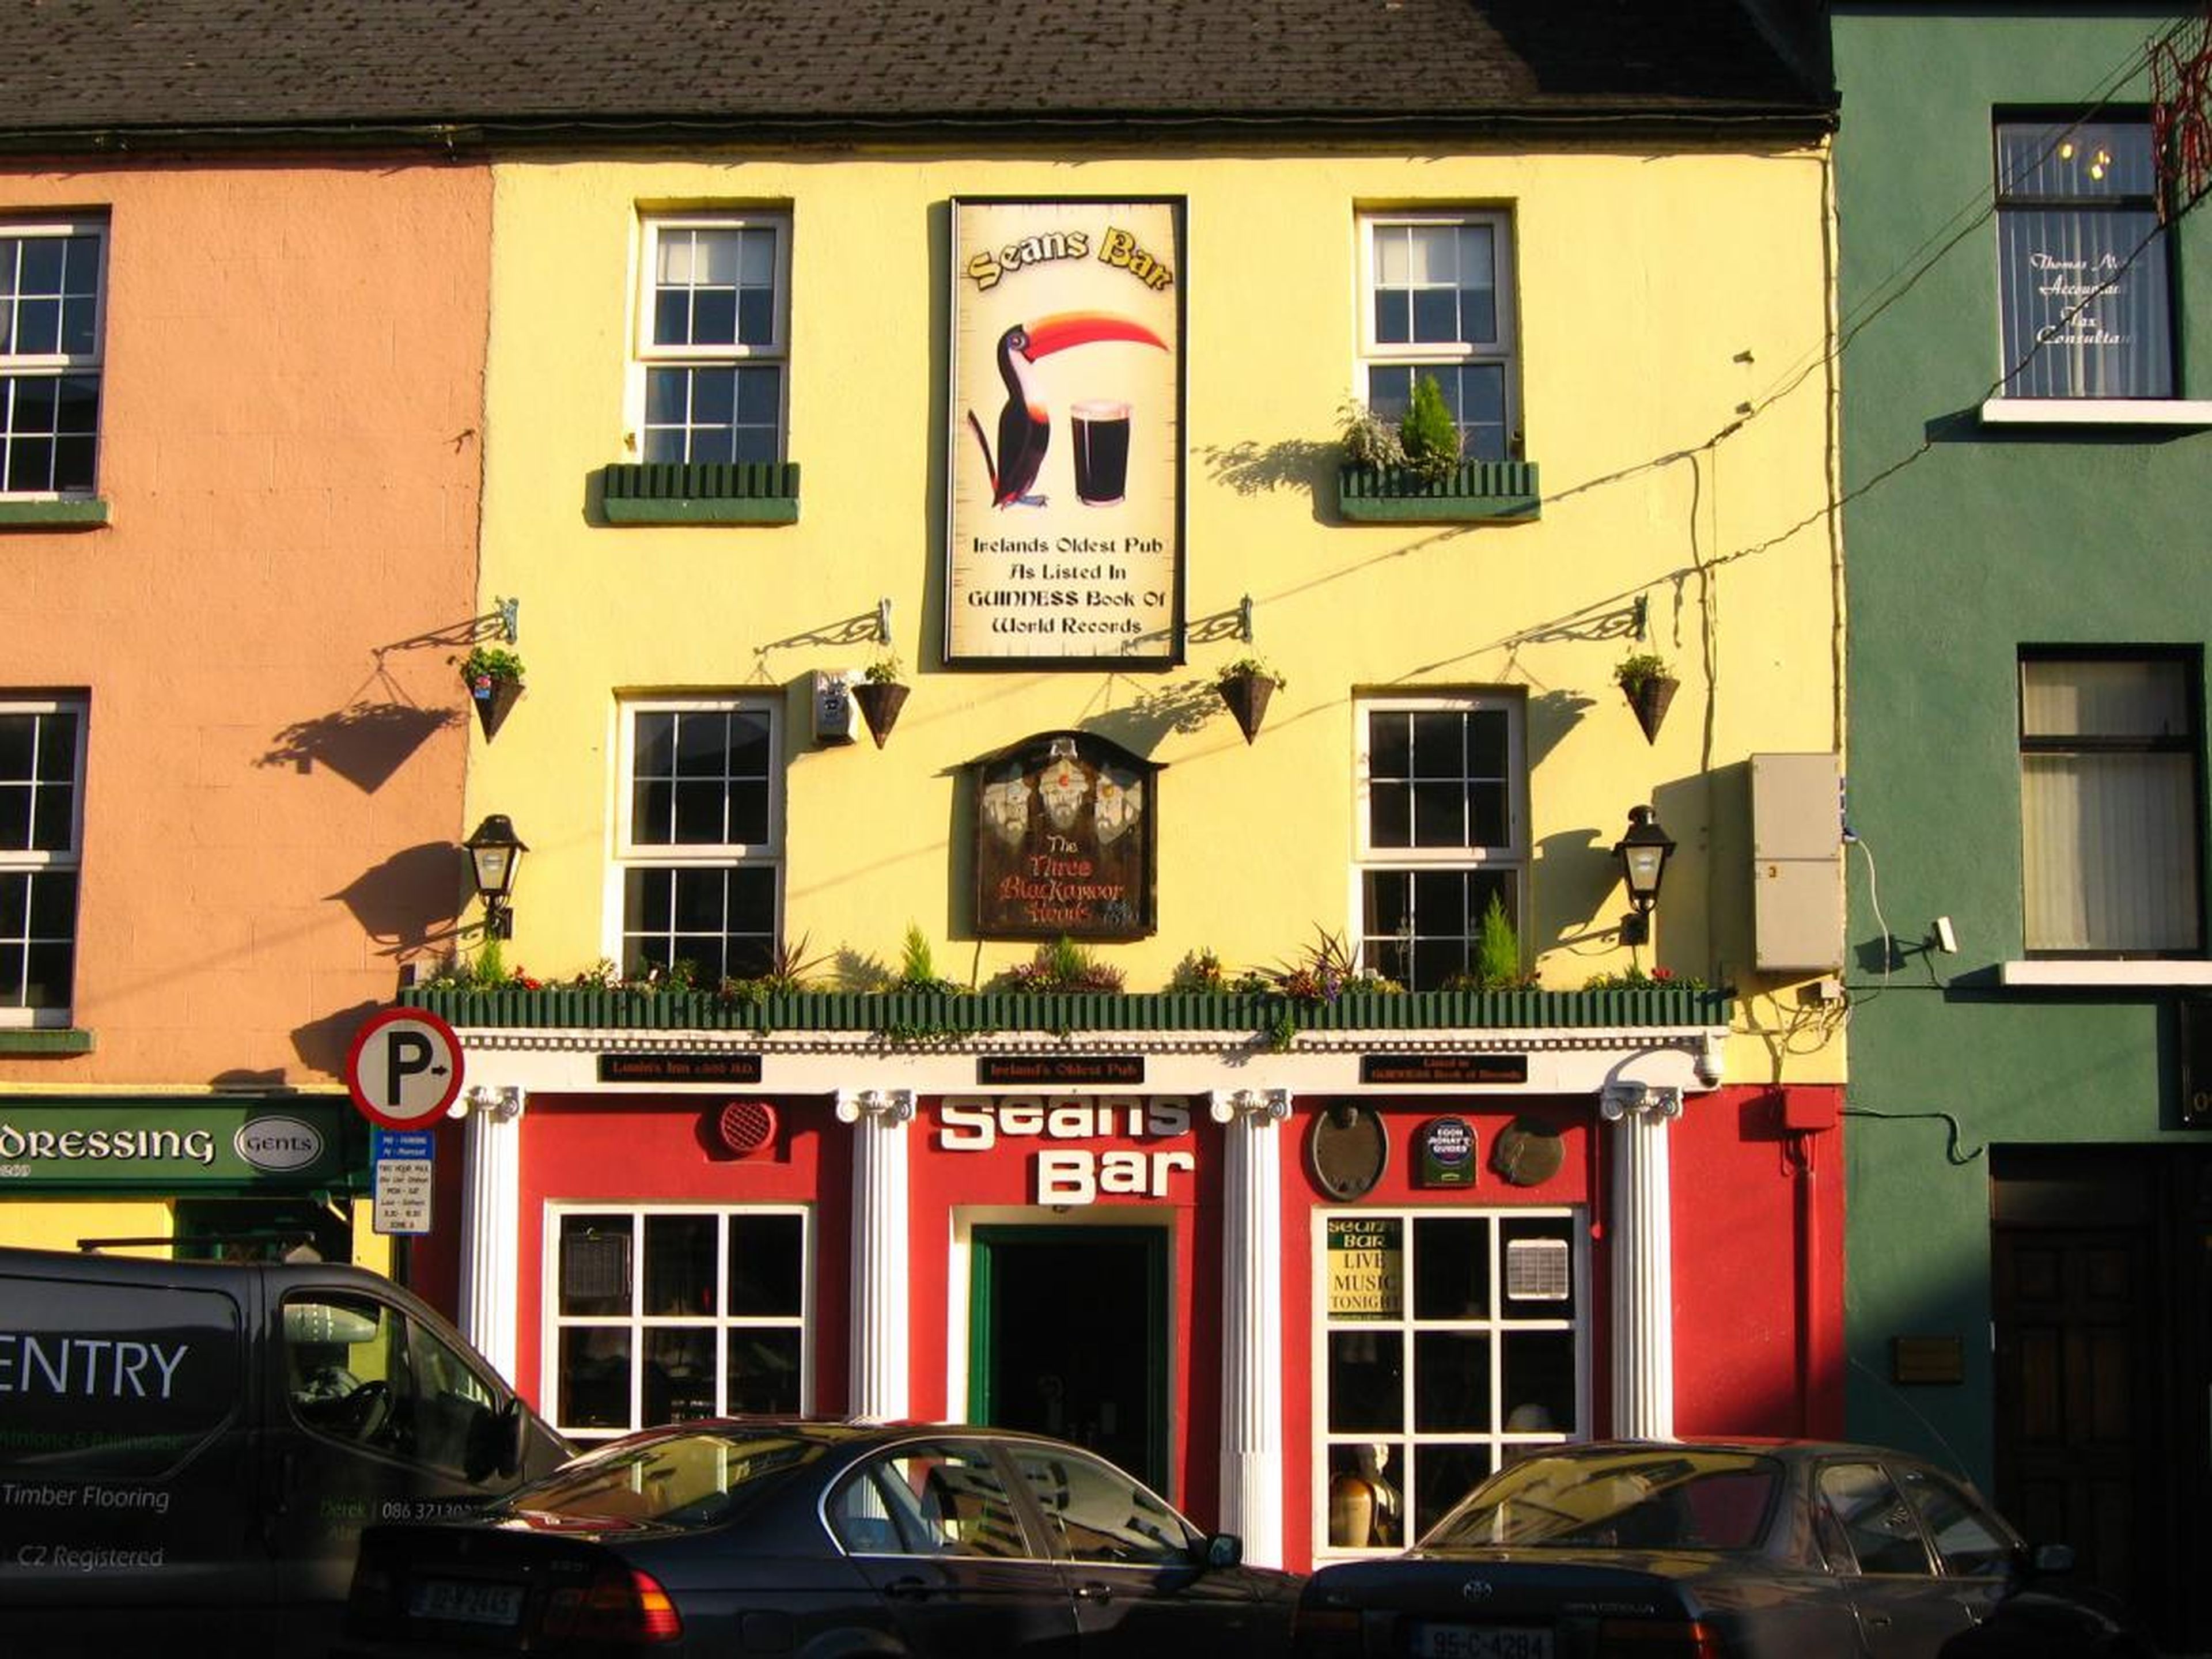 Fundado en 900 — Sean's Bar en Athlone, Irlanda